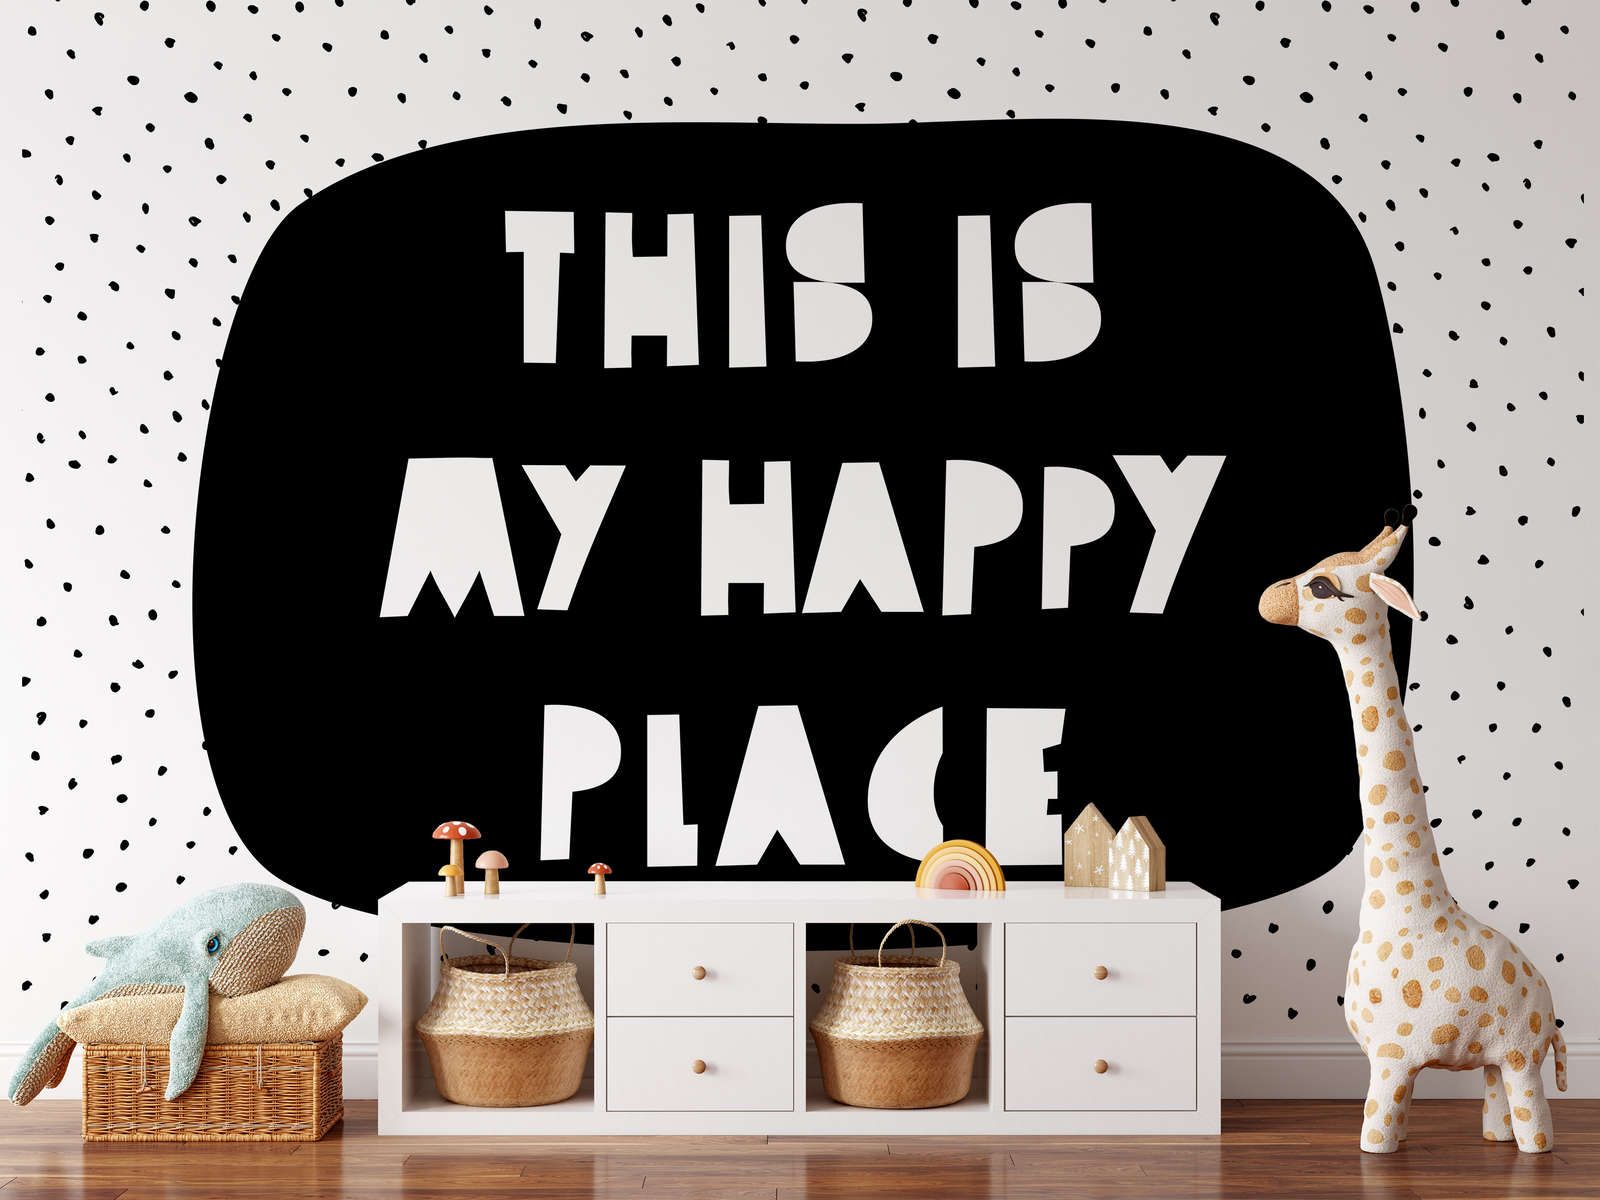             Fototapete fürs Kinderzimmer mit Schriftzug "This is my happy place" – Glattes & leicht glänzendes Vlies
        